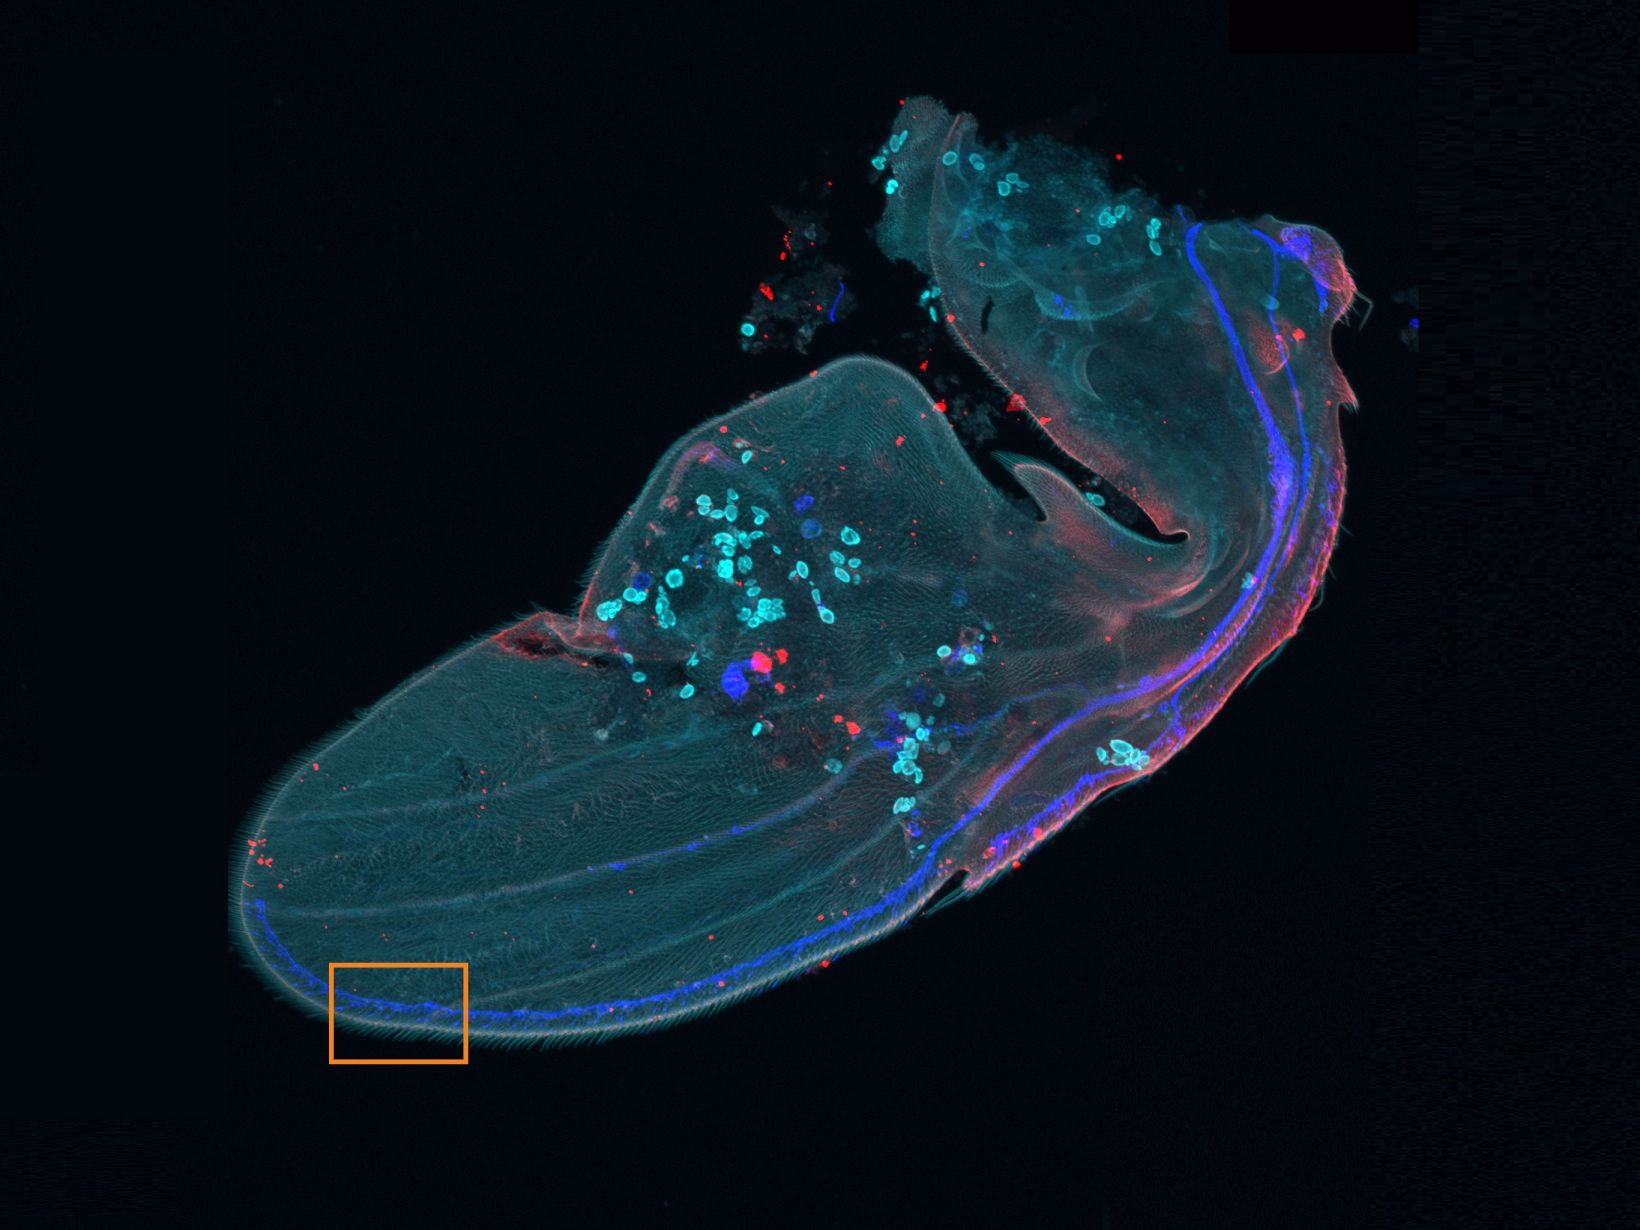 Übersichtsbild eines Drosophila-Flügels